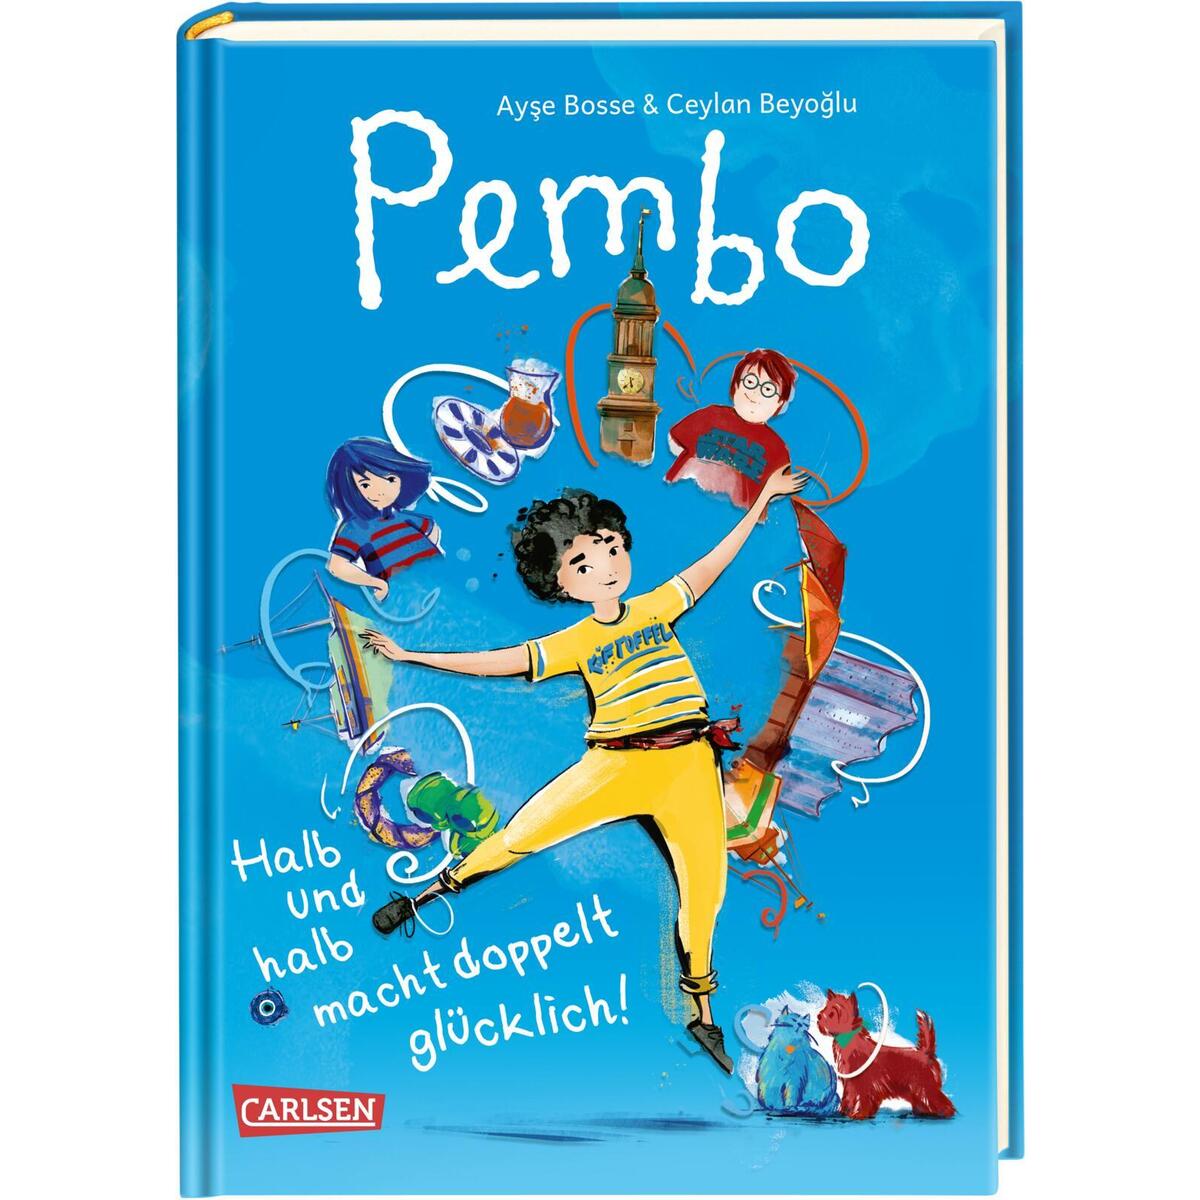 Pembo - Halb und halb macht doppelt glücklich! von Carlsen Verlag GmbH